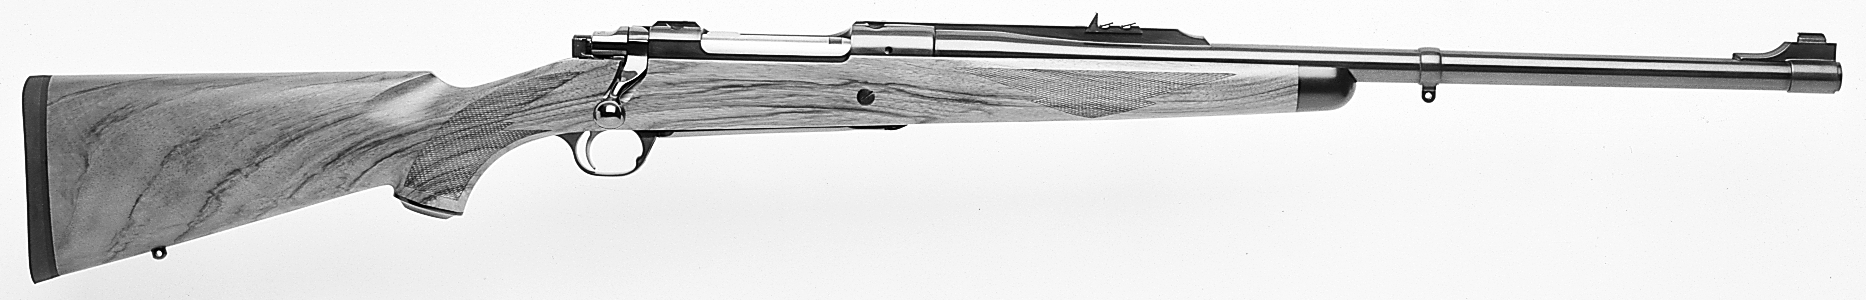 Model 77 Magnum MKII RSM